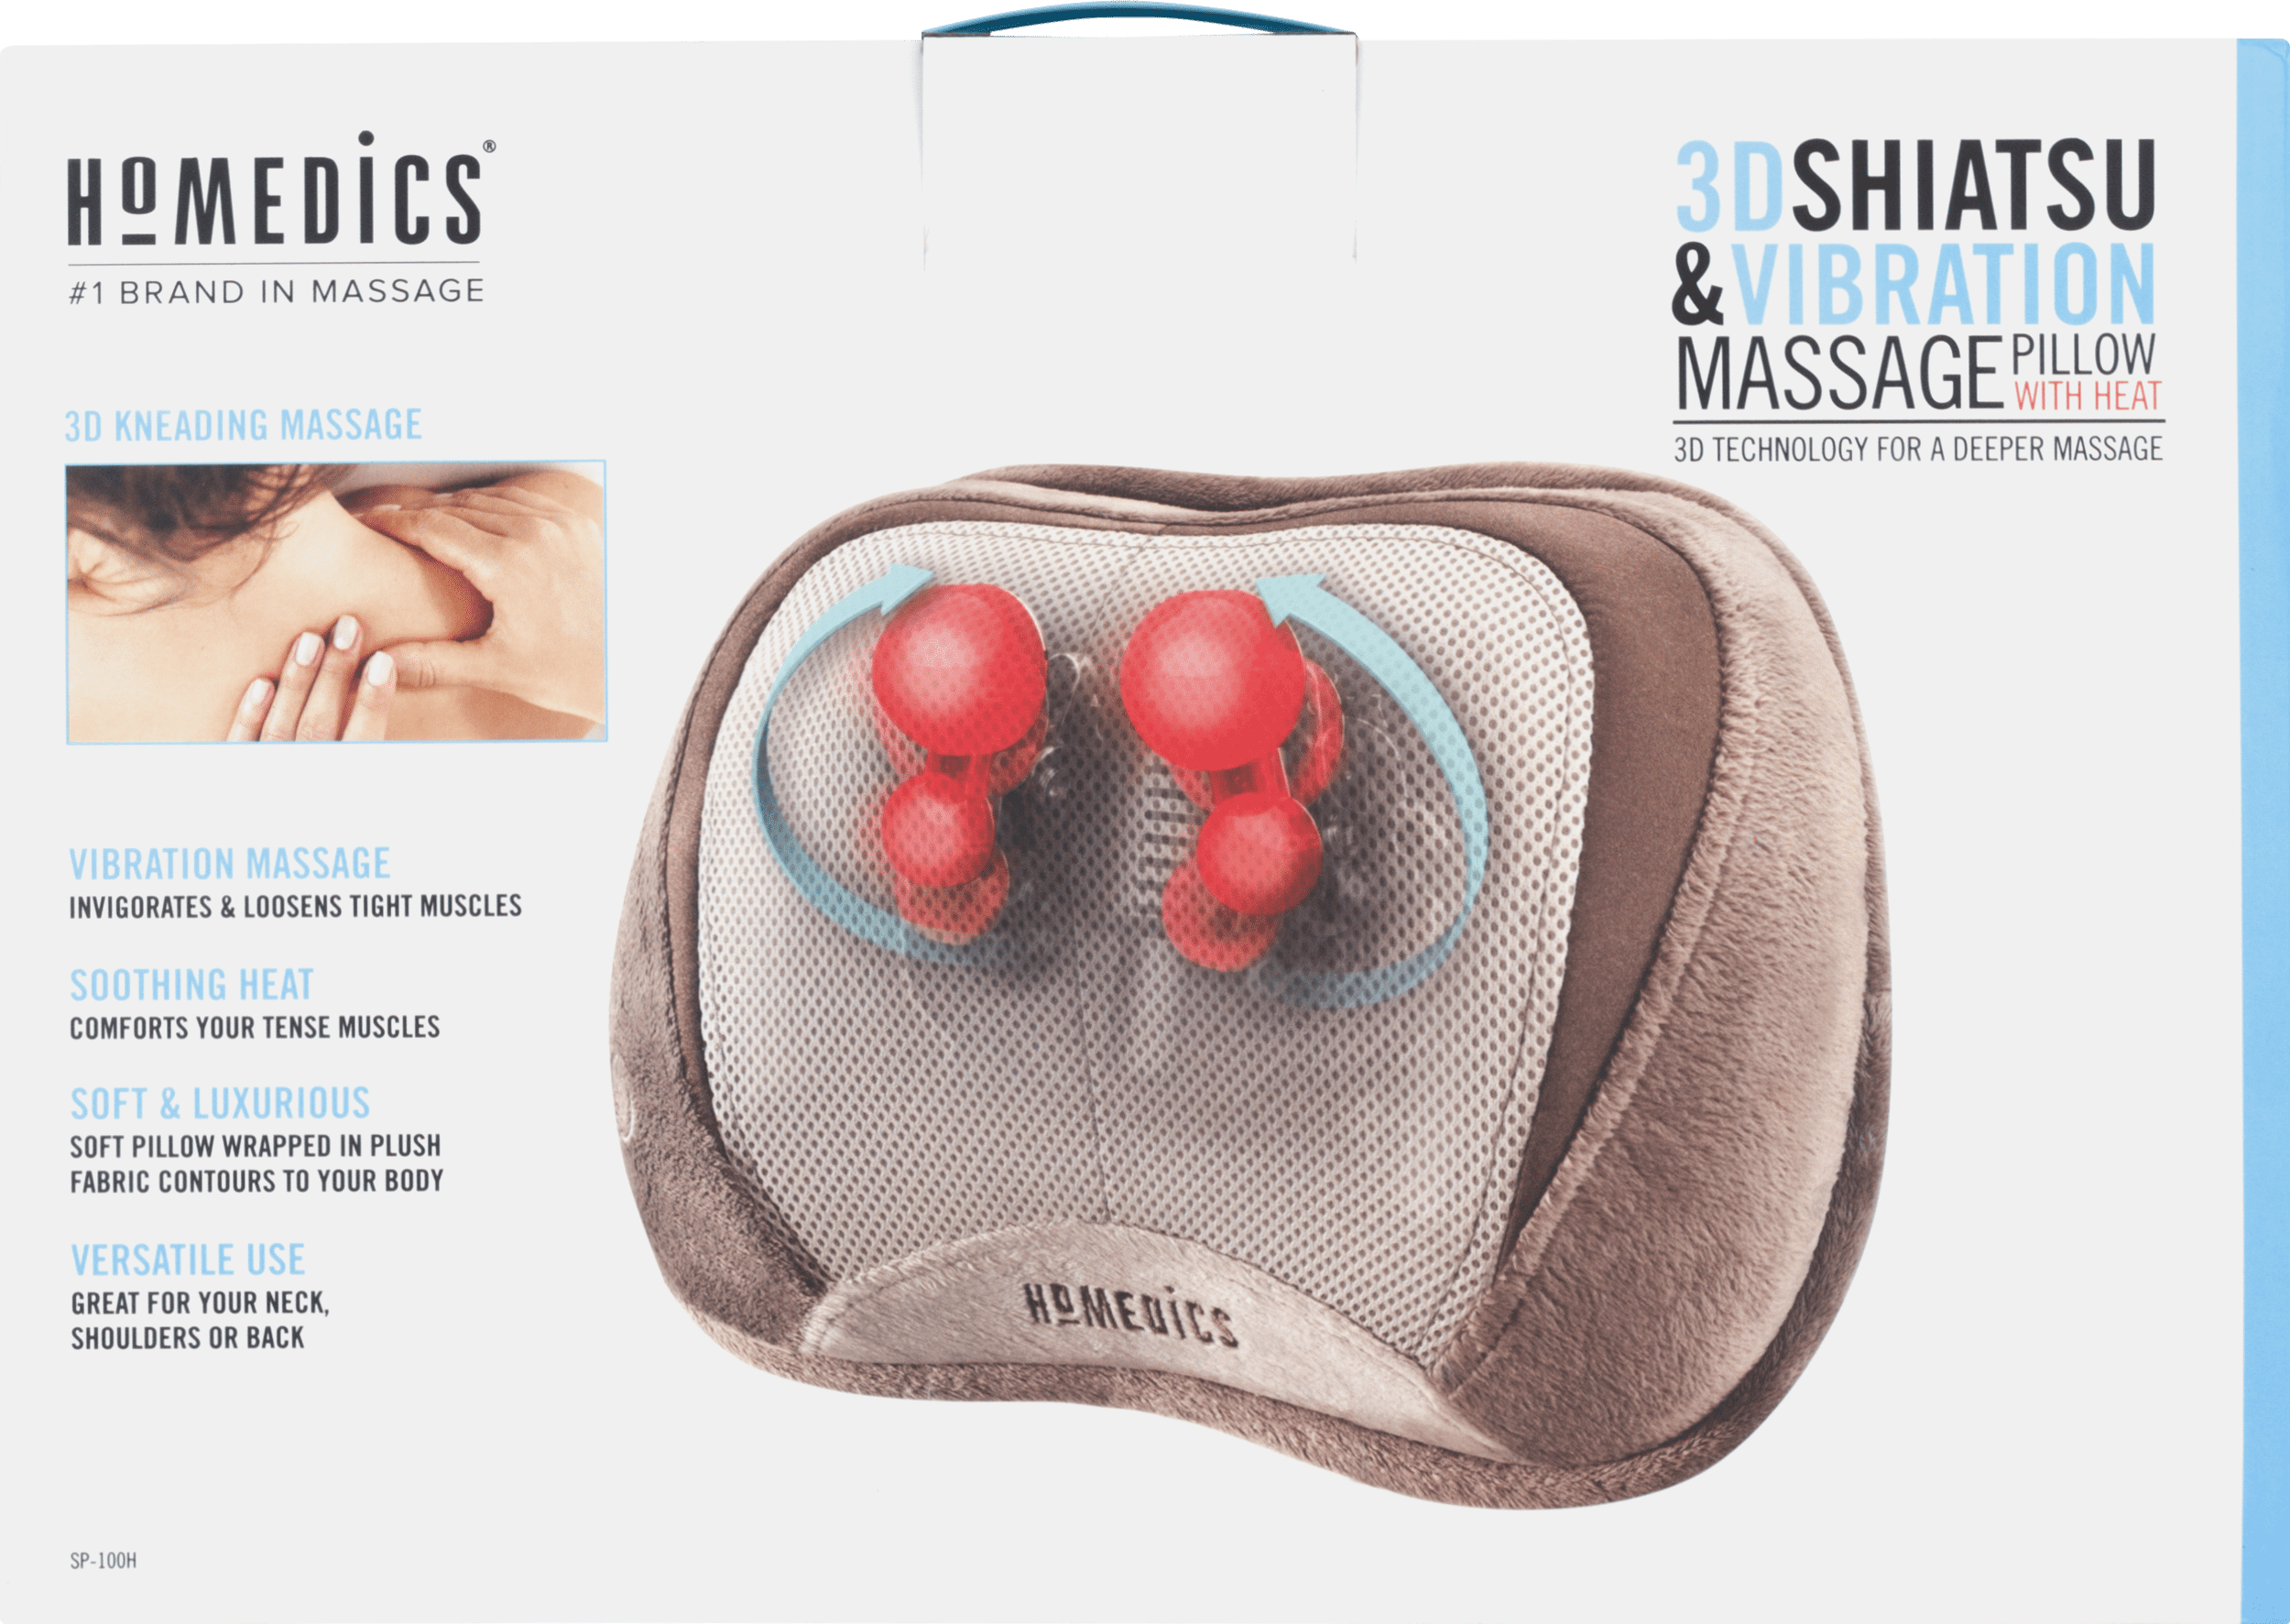 3d shiatsu & vibration massage pillow with heat